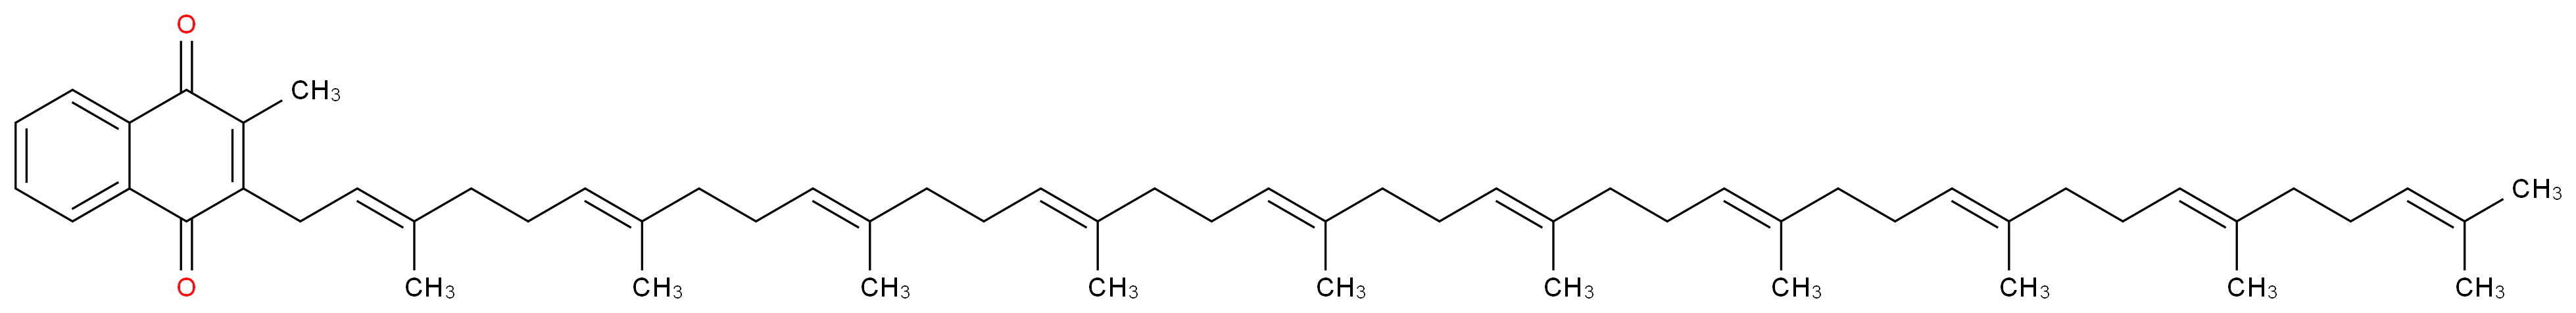 2-[(2E,6E,10E,14E,18E,22E,26E,30E,34E)-3,7,11,15,19,23,27,31,35,39-decamethyltetraconta-2,6,10,14,18,22,26,30,34,38-decaen-1-yl]-3-methyl-1,4-dihydronaphthalene-1,4-dione_分子结构_CAS_523-40-0